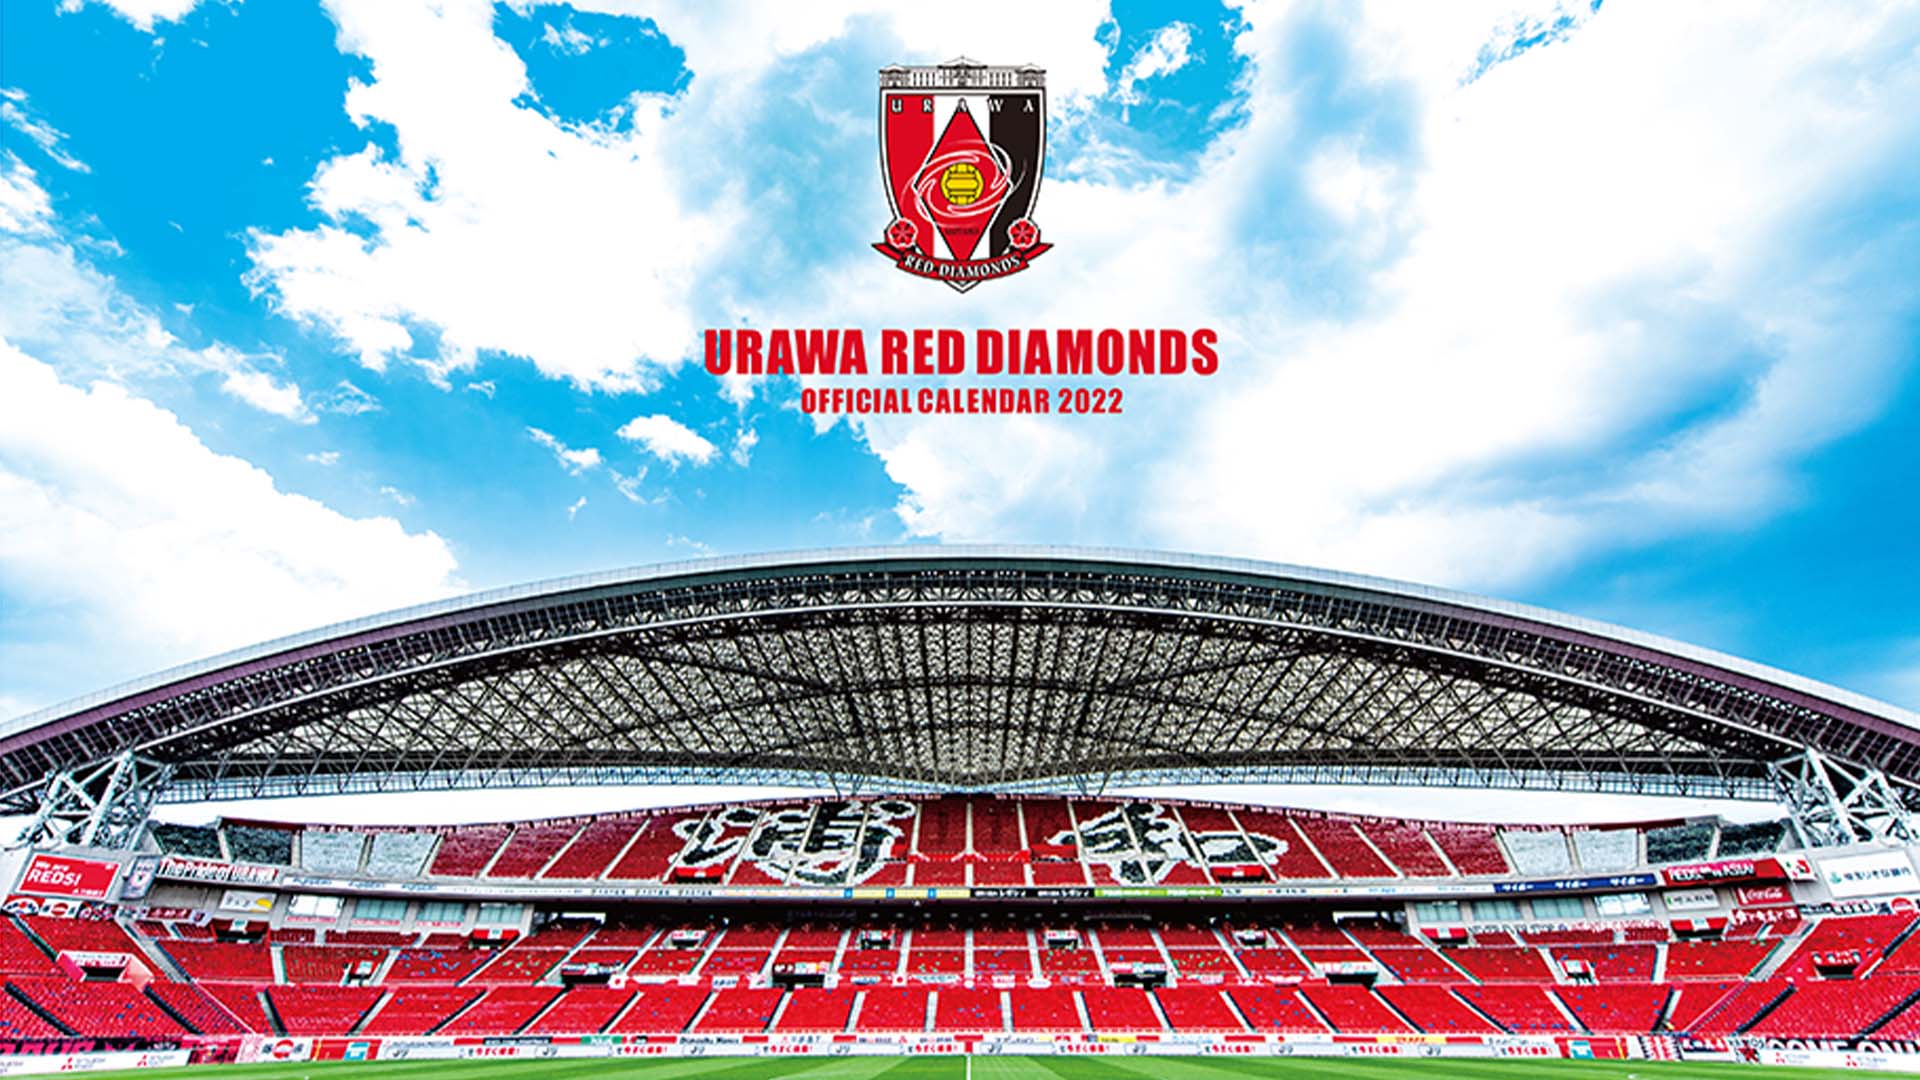 22オフィシャルカレンダー 10 15 金 販売開始 Urawa Red Diamonds Official Website